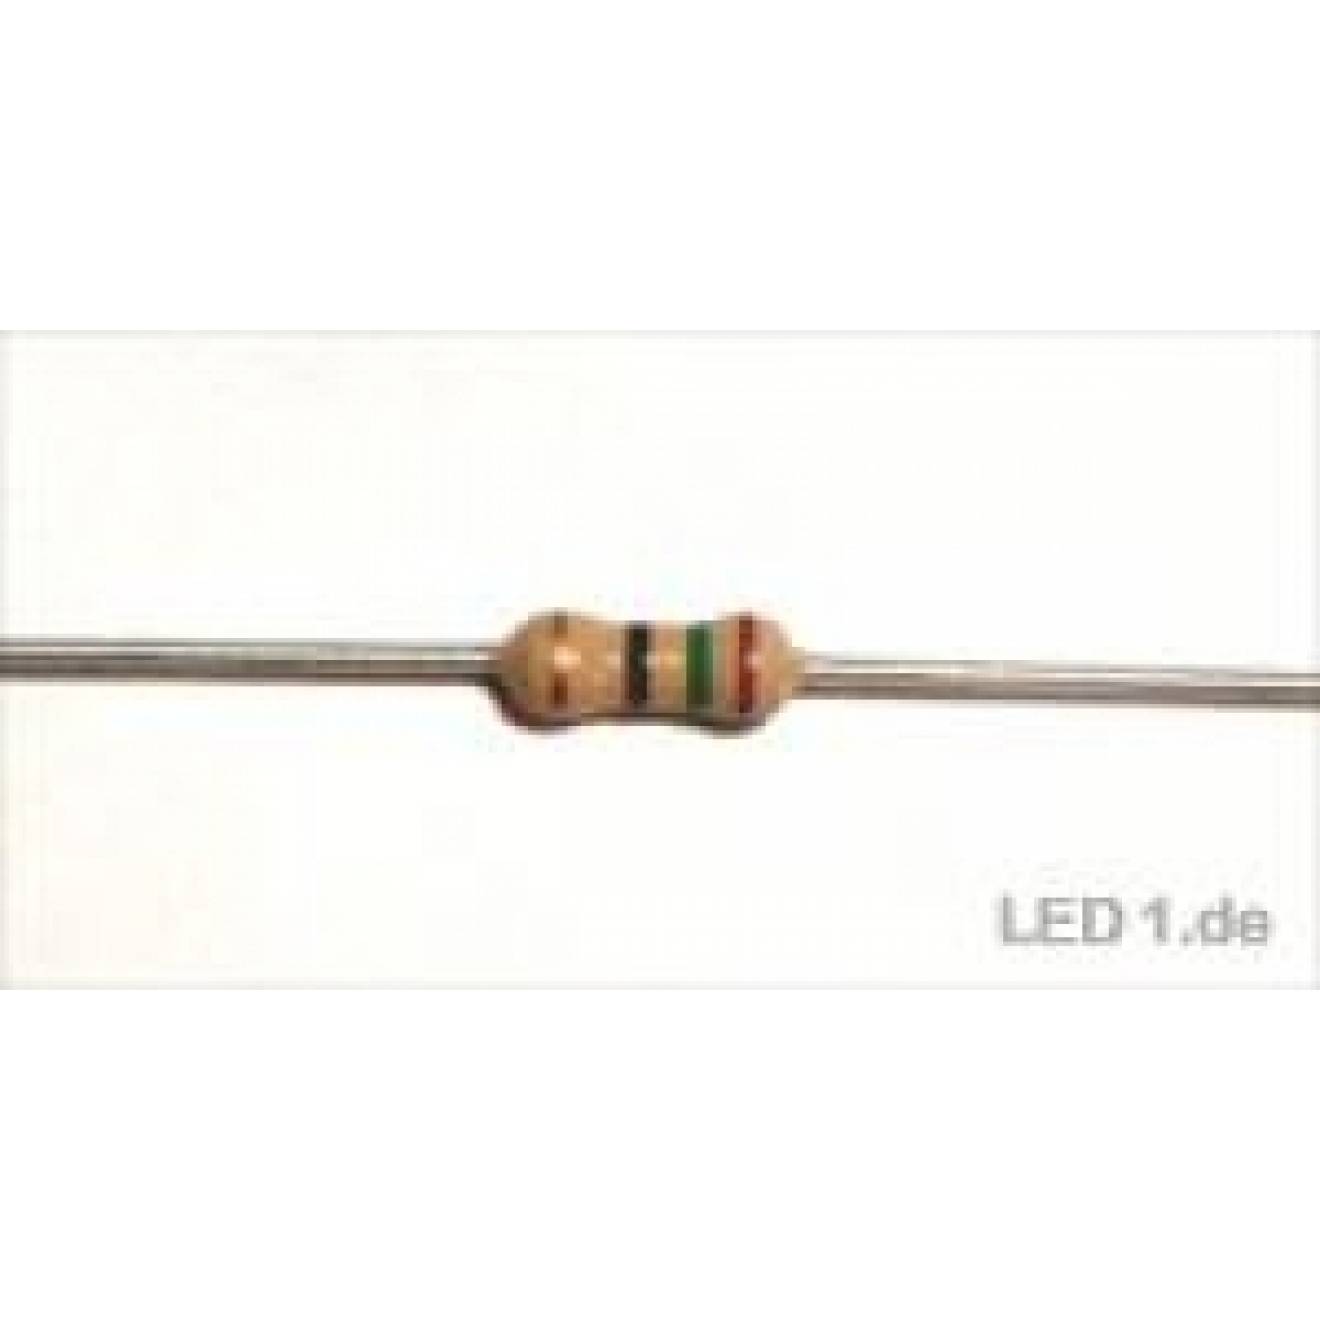 2013 Kohleschicht Widerstand Resistor 36 Ohm 0,25W 5% 10 Stück 